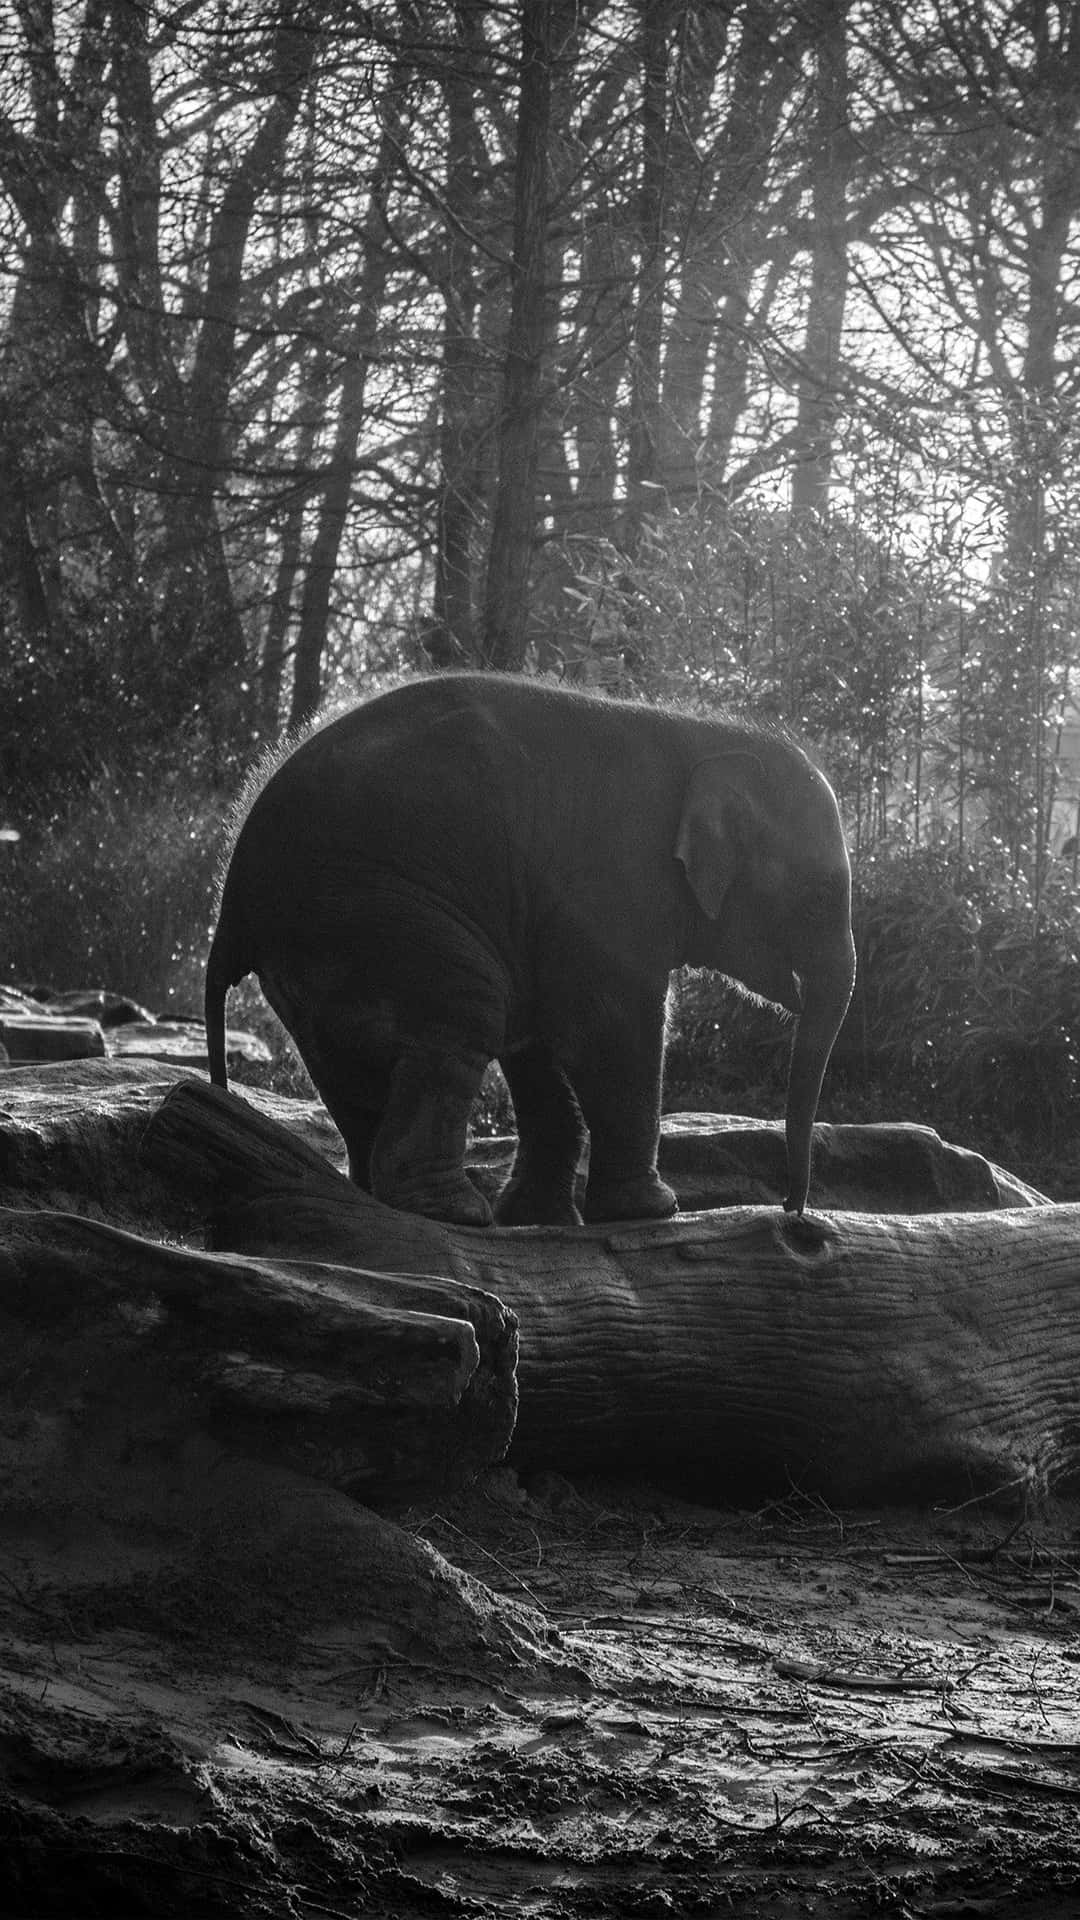 Estaimagen De Un Elefante Lindo Nos Muestra Lo Majestuosos Y Hermosos Que Pueden Ser Estos Animales.